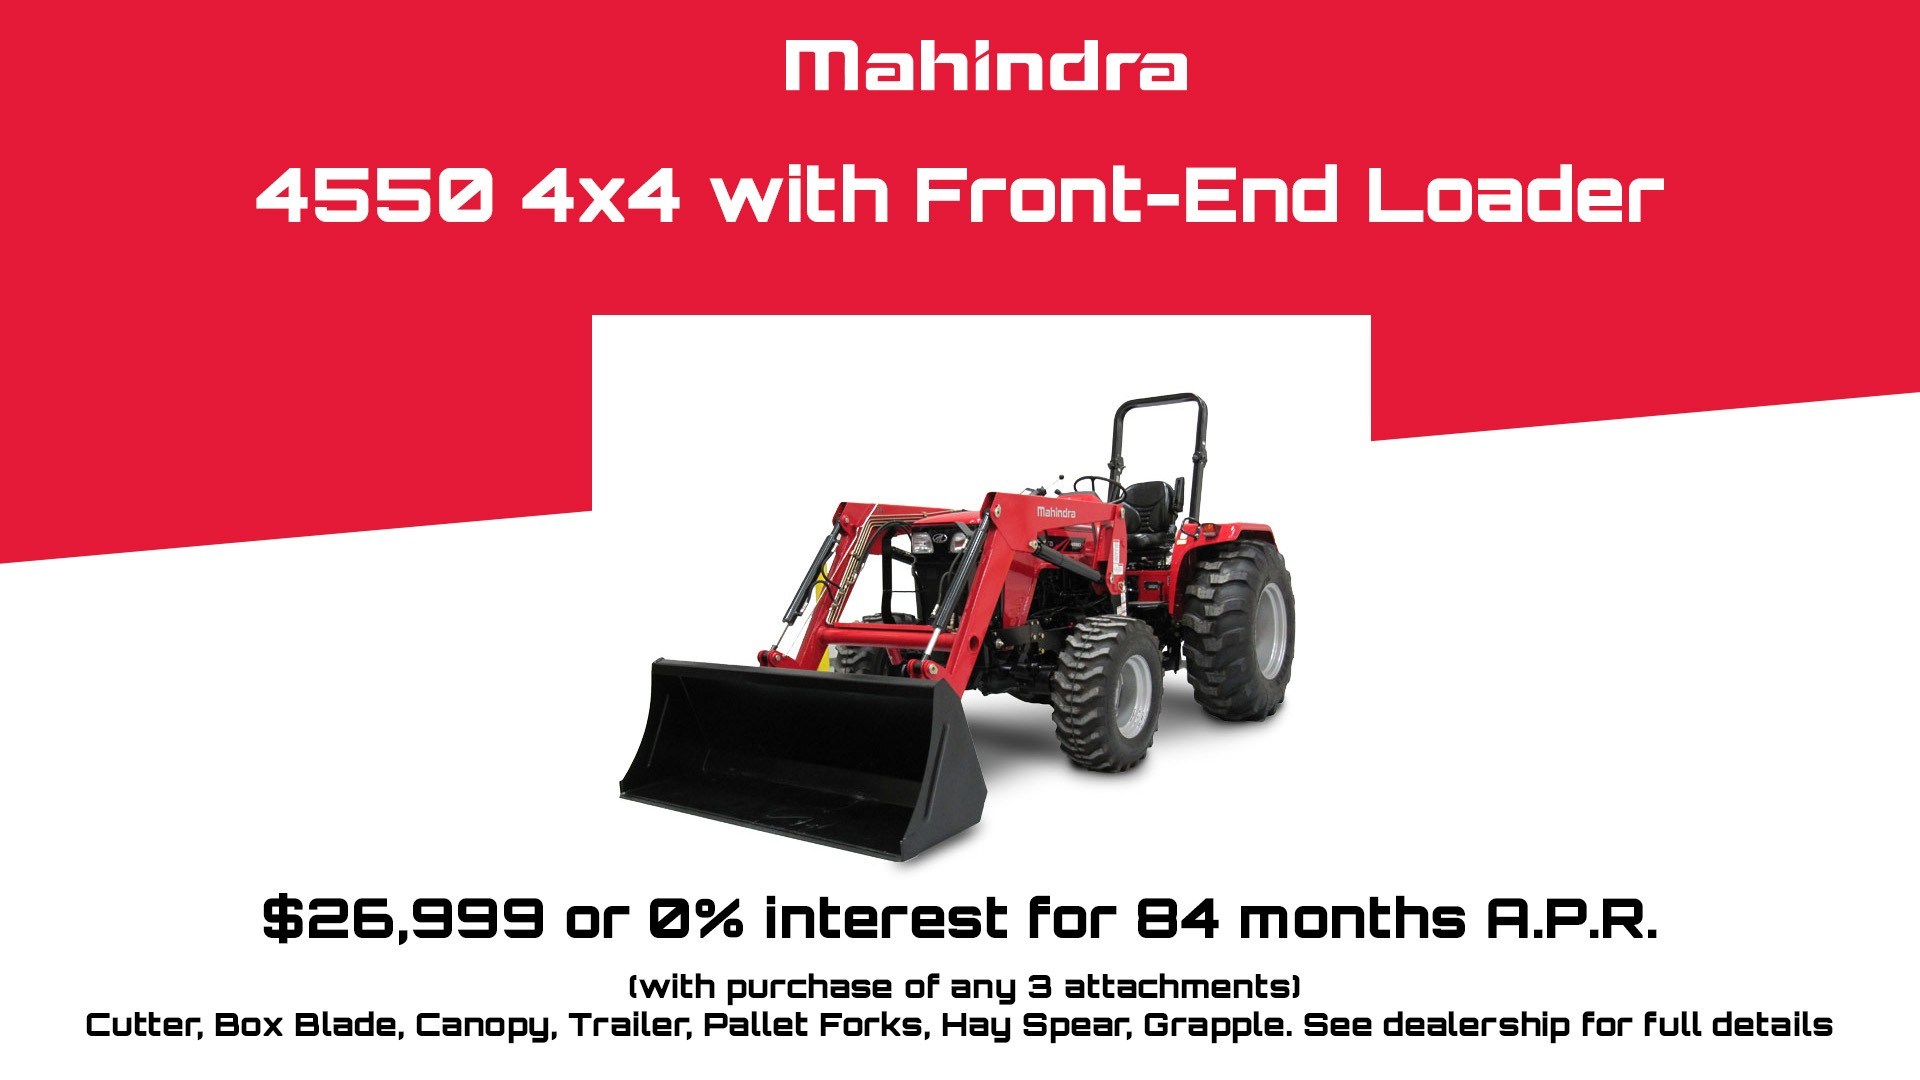 Mahindra 4550 4x4 special